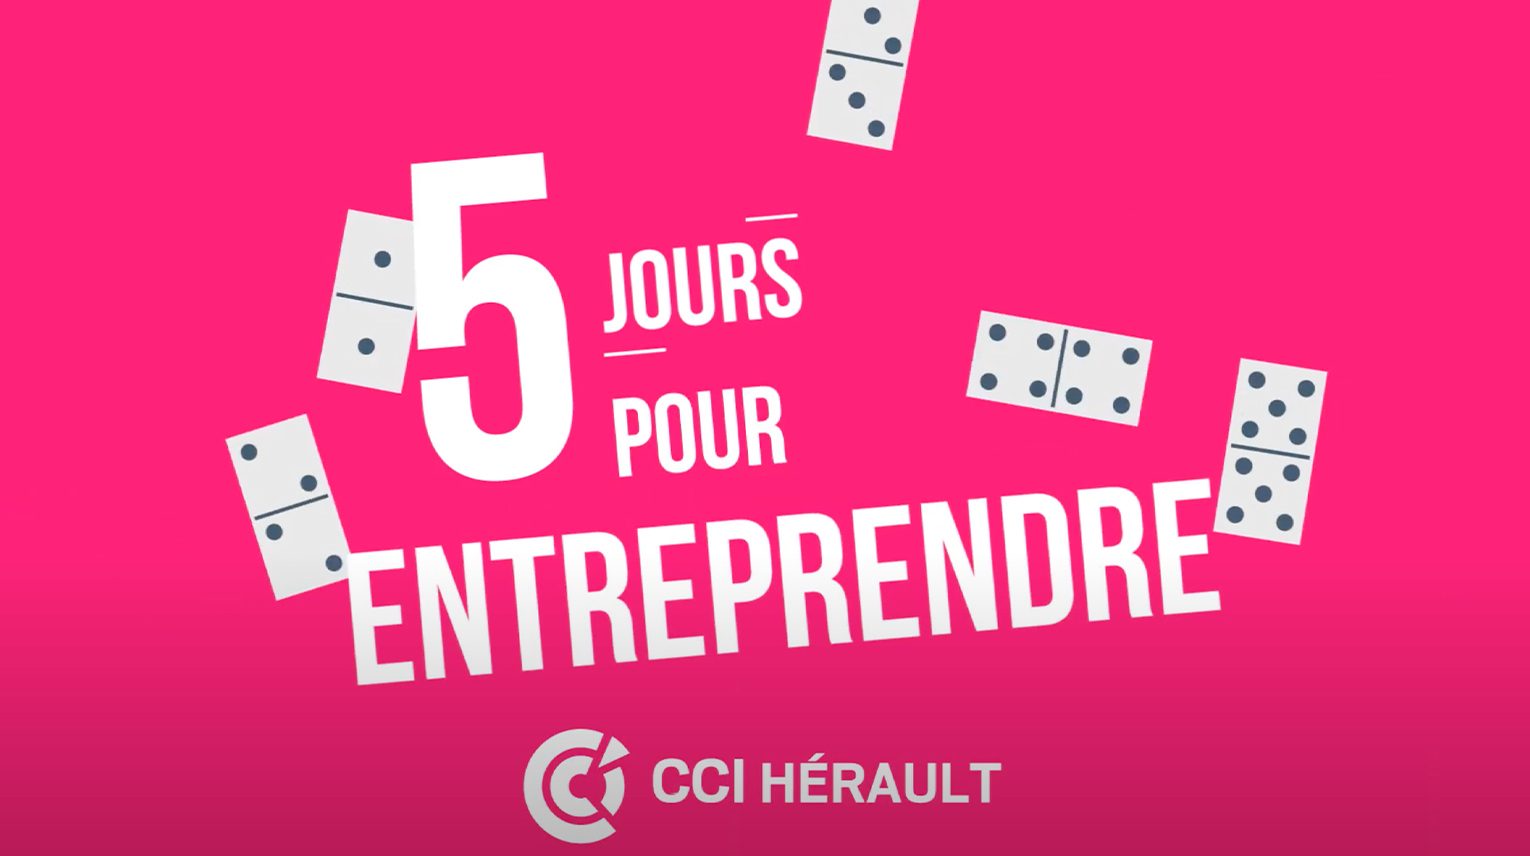 cci-herault-5j-entreprendre